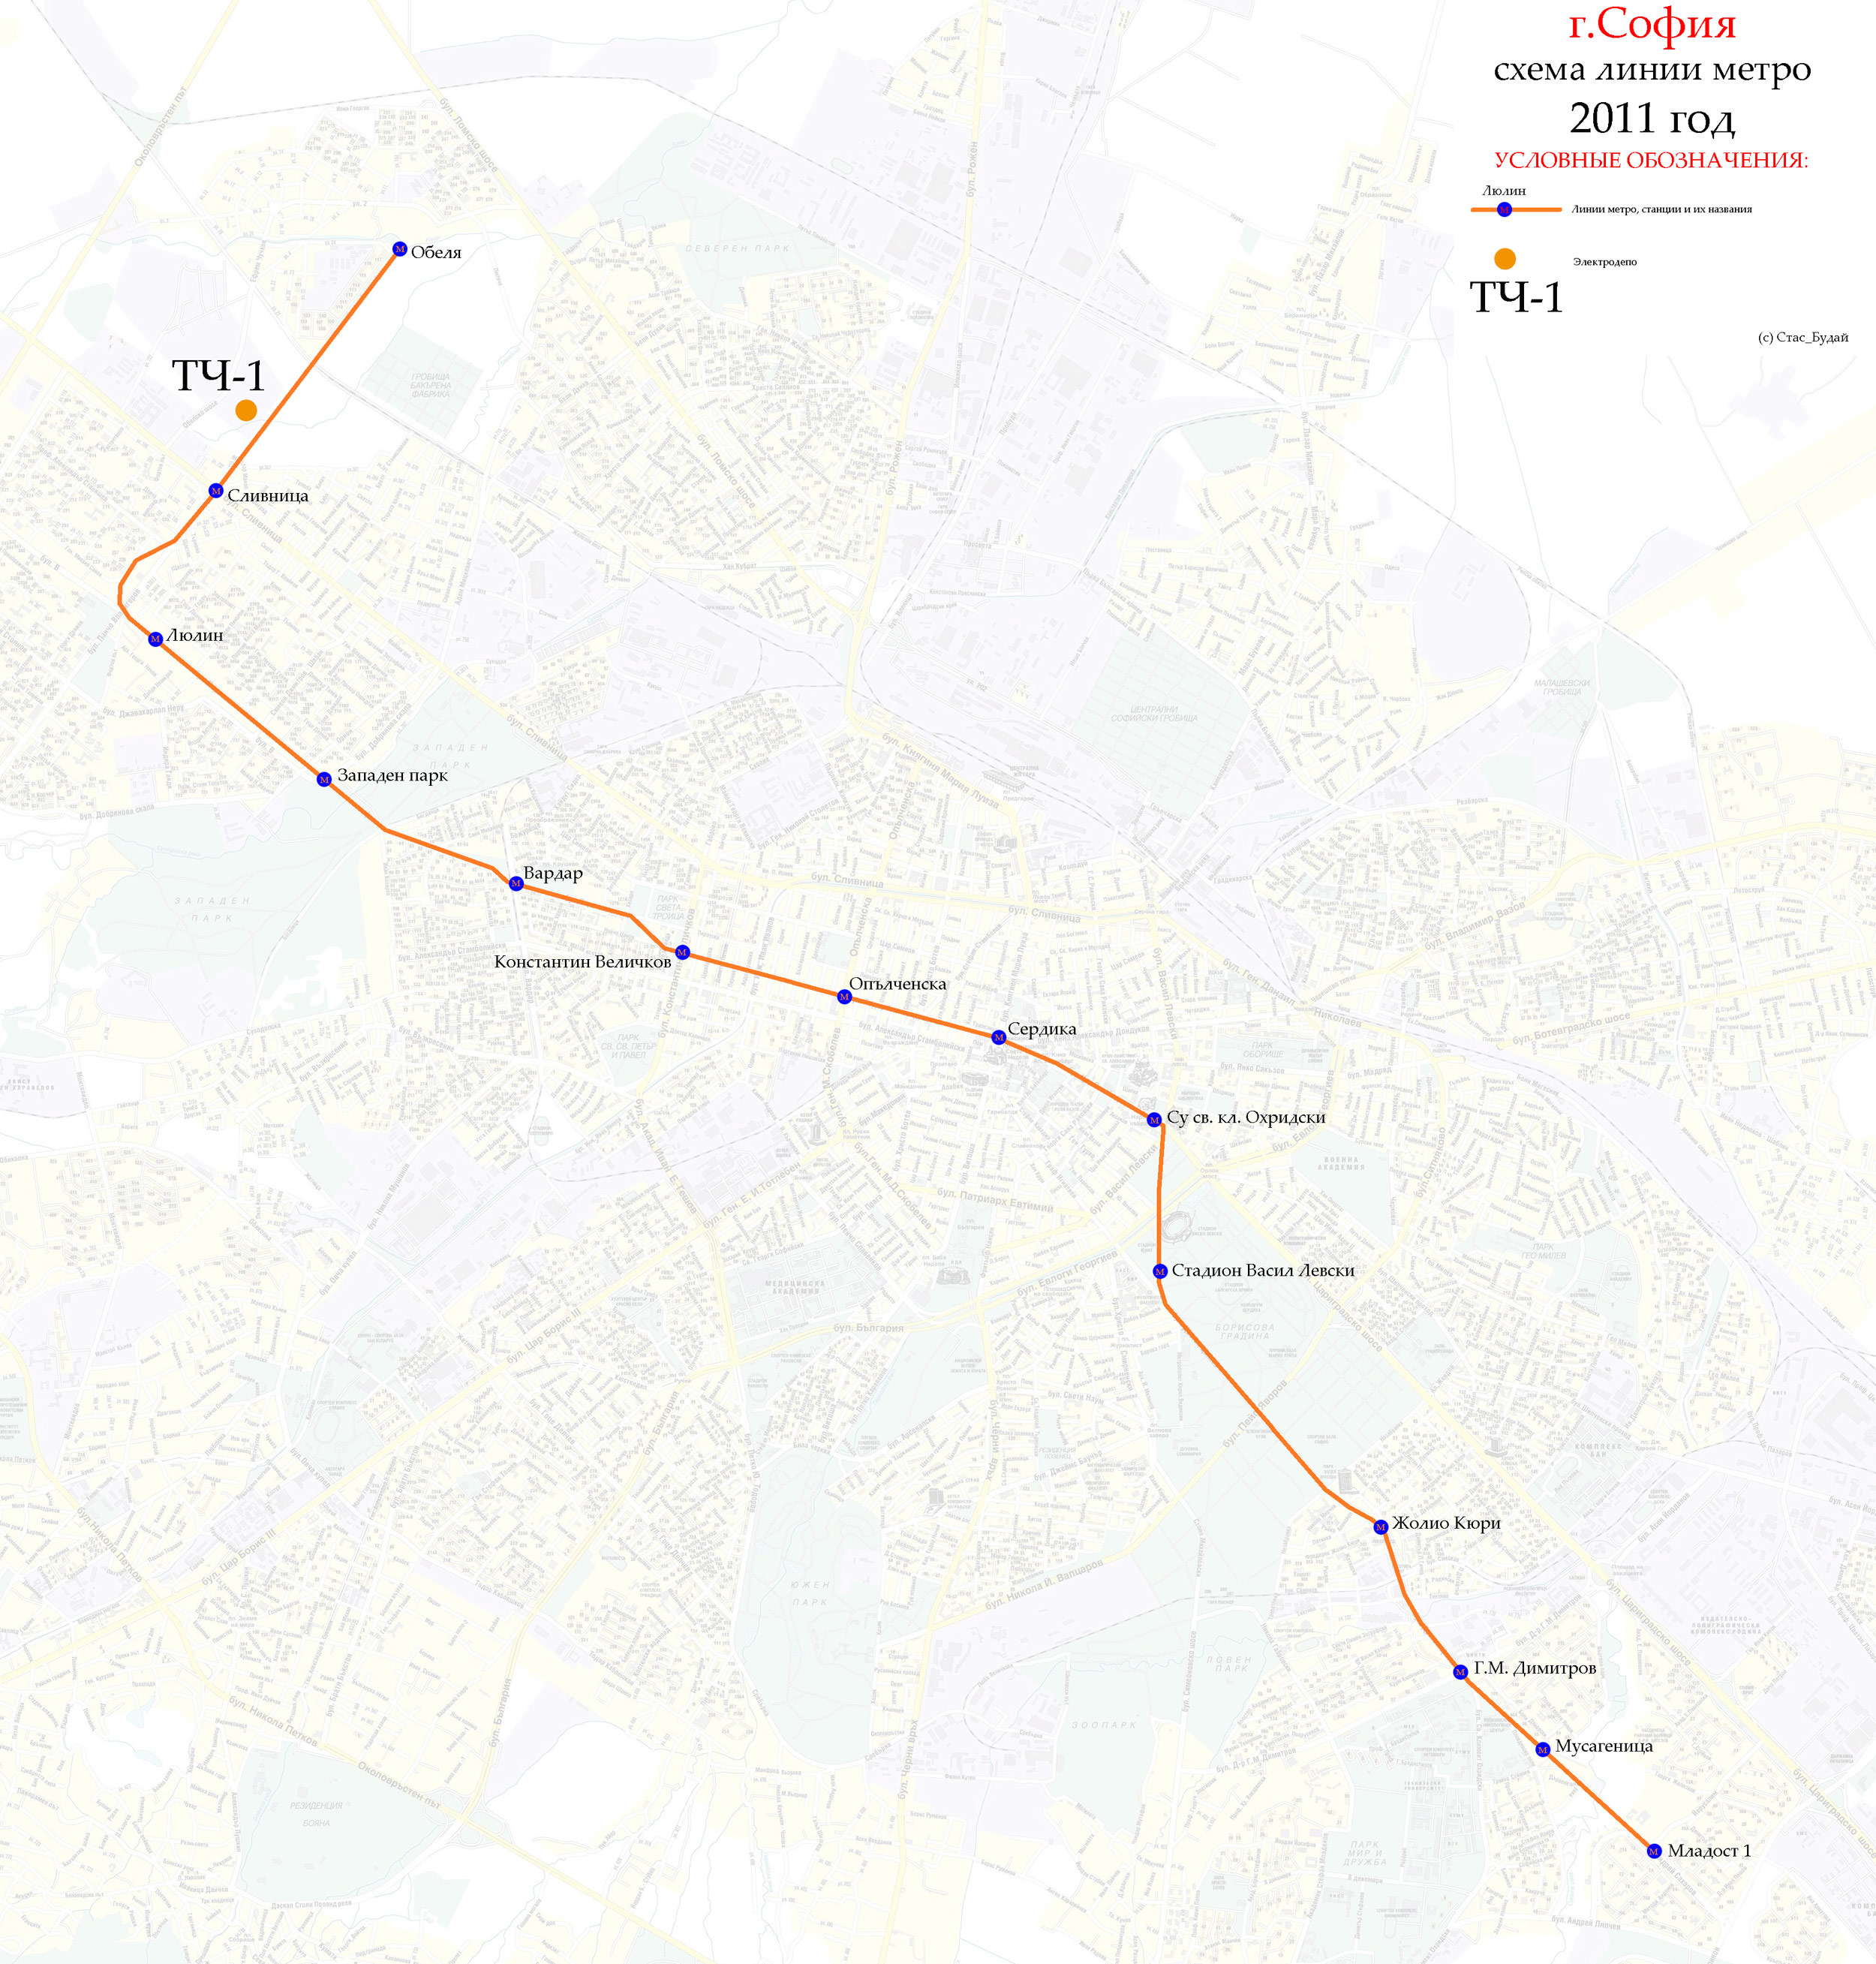 София — Карти и схеми на отделни маршрути в метрото